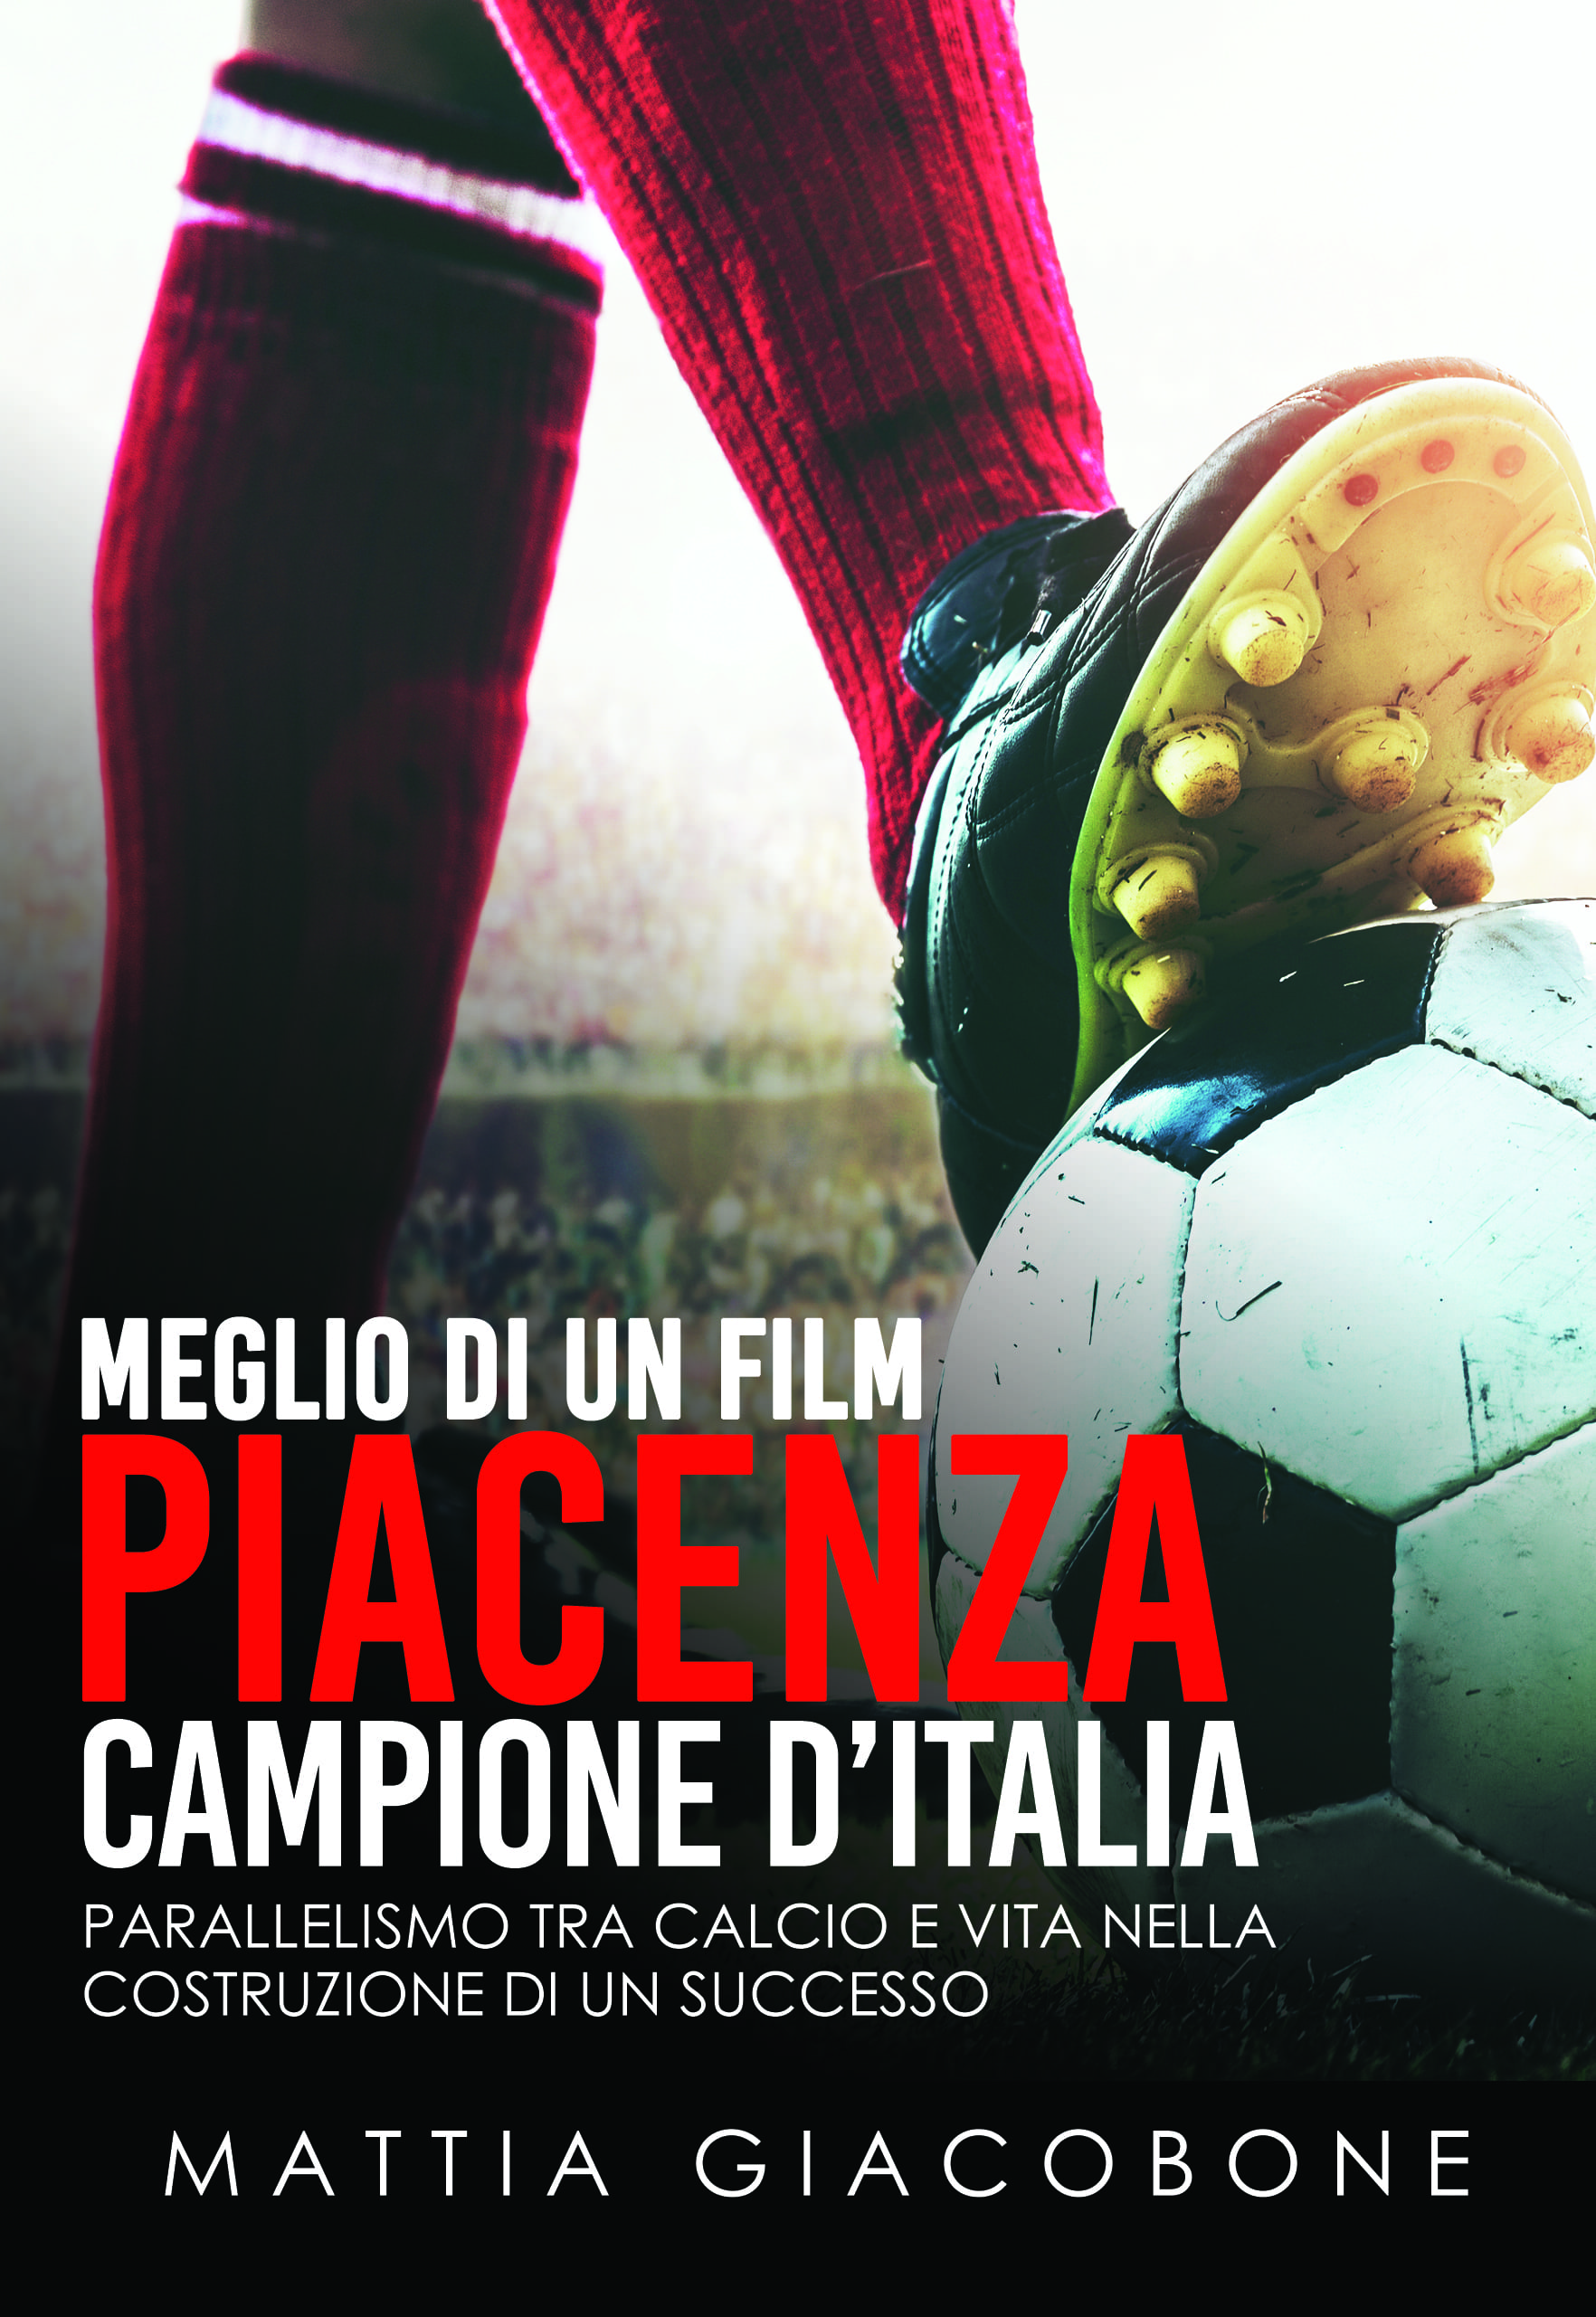 Meglio di un Film - Piacenza Campione d'Italia